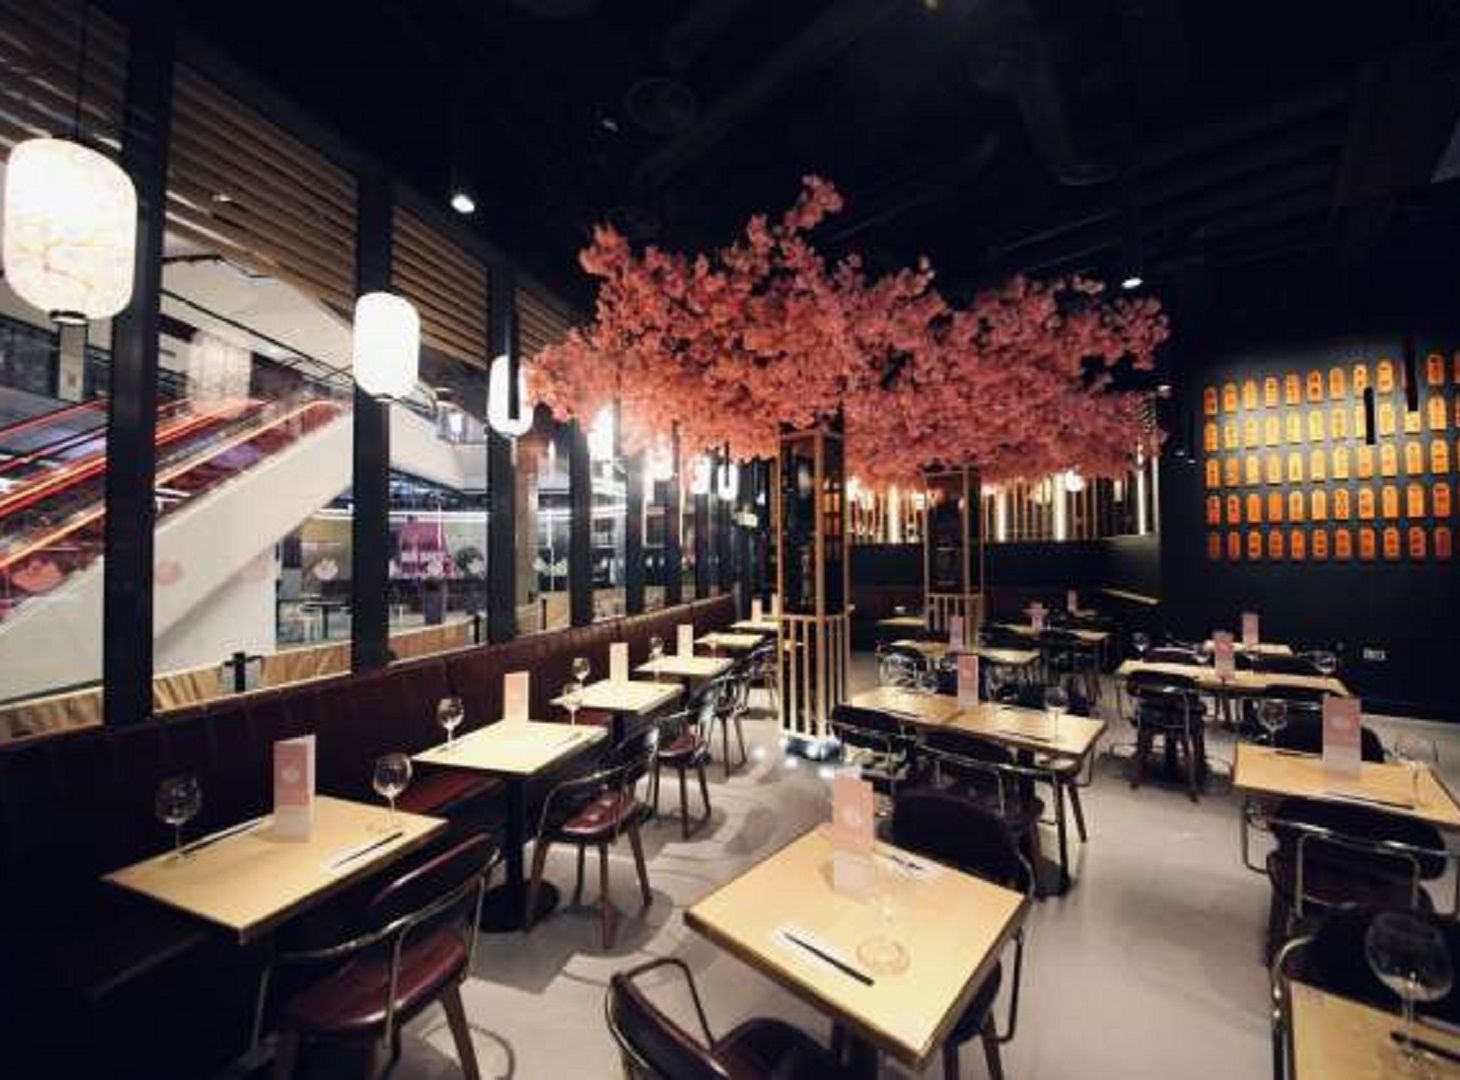 Image of inside Maki & Ramen Restaurant